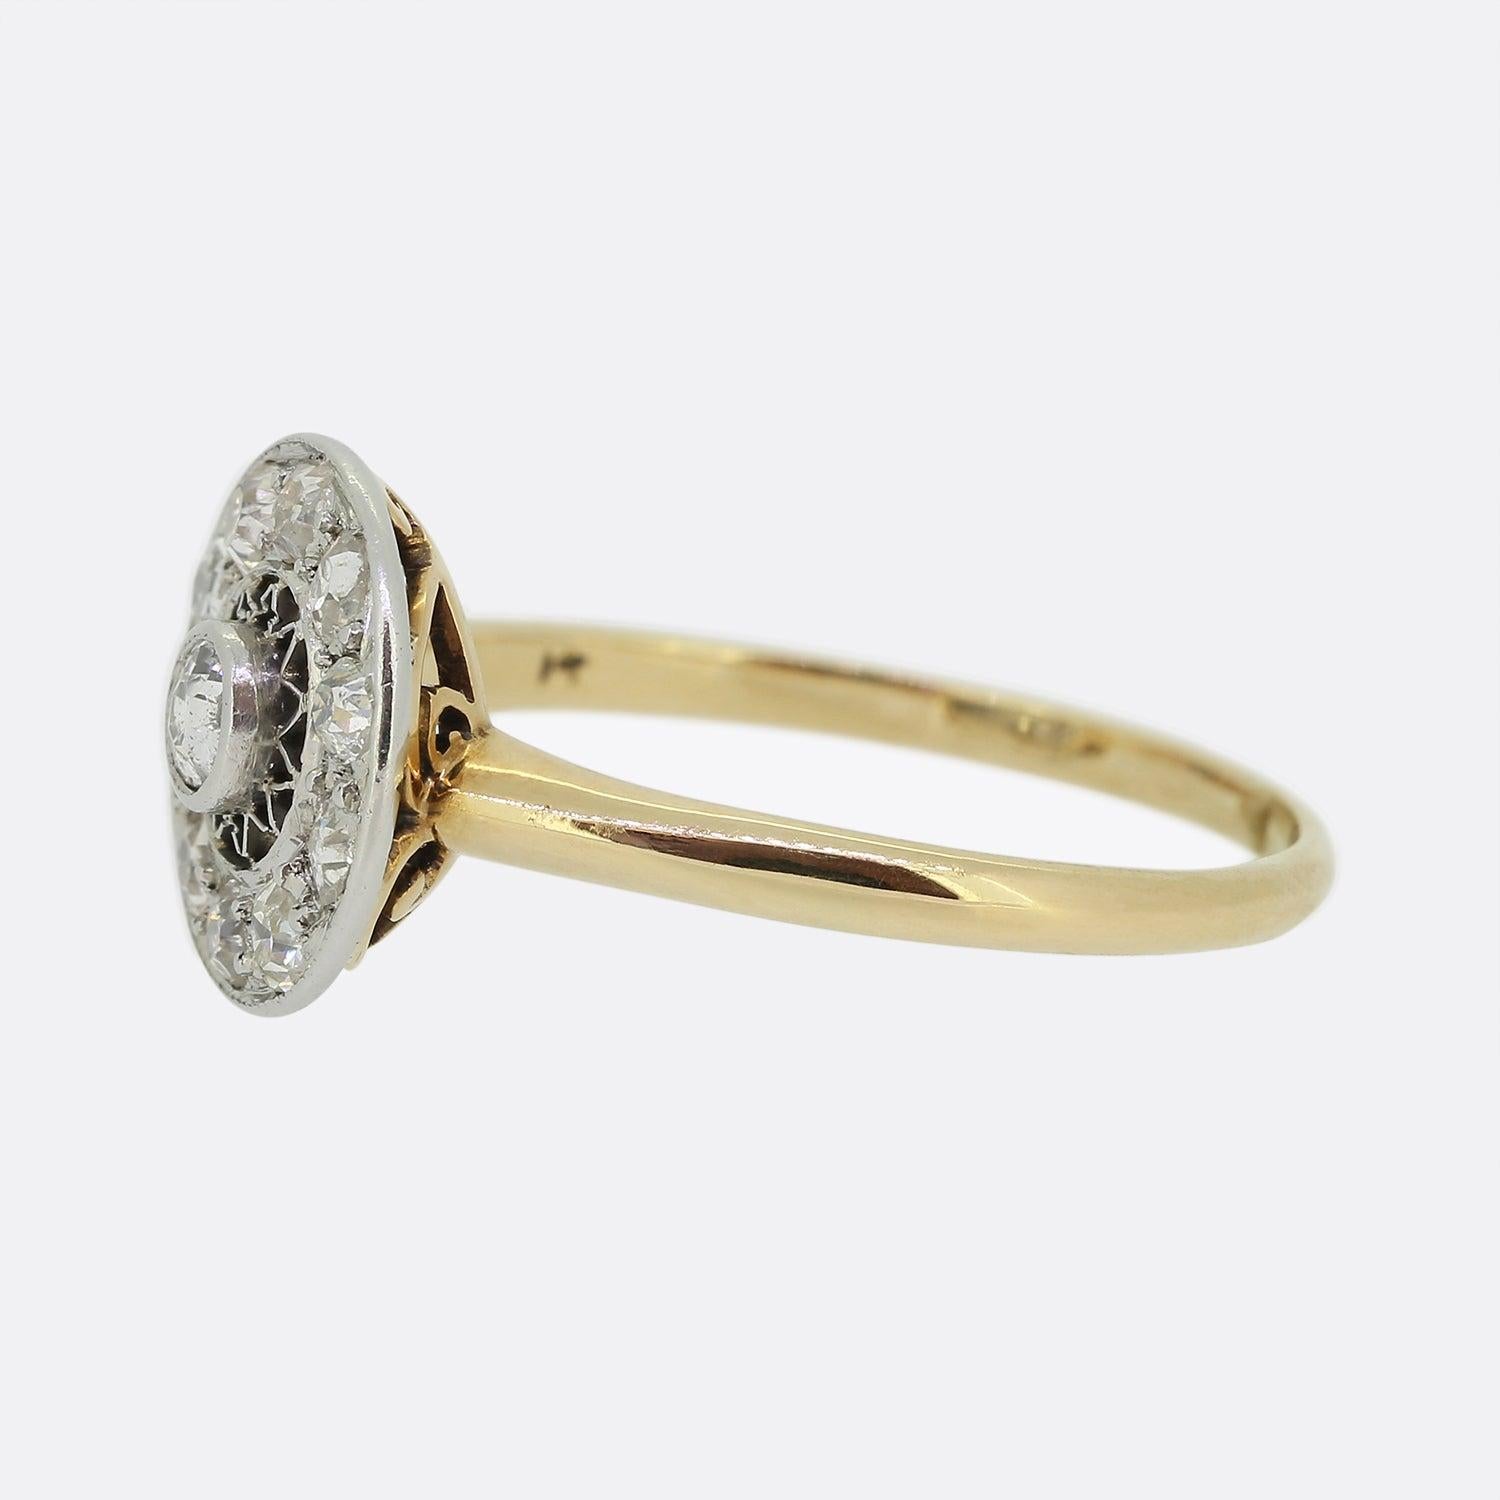 Hier haben wir einen wunderschönen Diamant-Cluster-Ring aus der Edwardianischen Ära. Der runde Diamant im Altschliff in der Mitte des Schmuckstücks ist von einem offenen, geometrischen Sonnenschliffmuster umgeben. Der äußere Rand des Zifferblatts